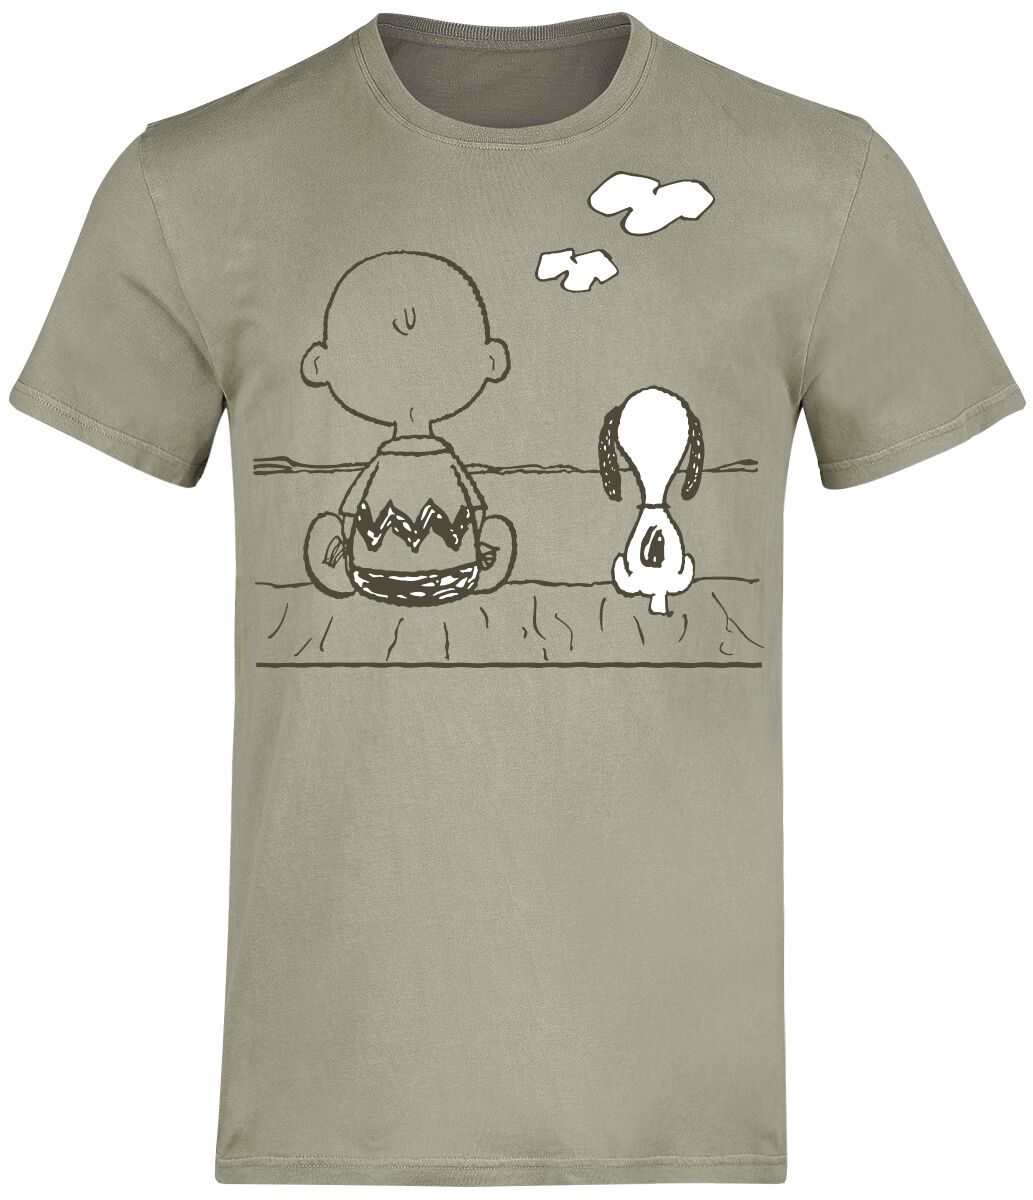 Peanuts T-Shirt - Charlie Brown und Snoopy - S bis 3XL - für Männer - Größe XL - grün  - EMP exklusives Merchandise!